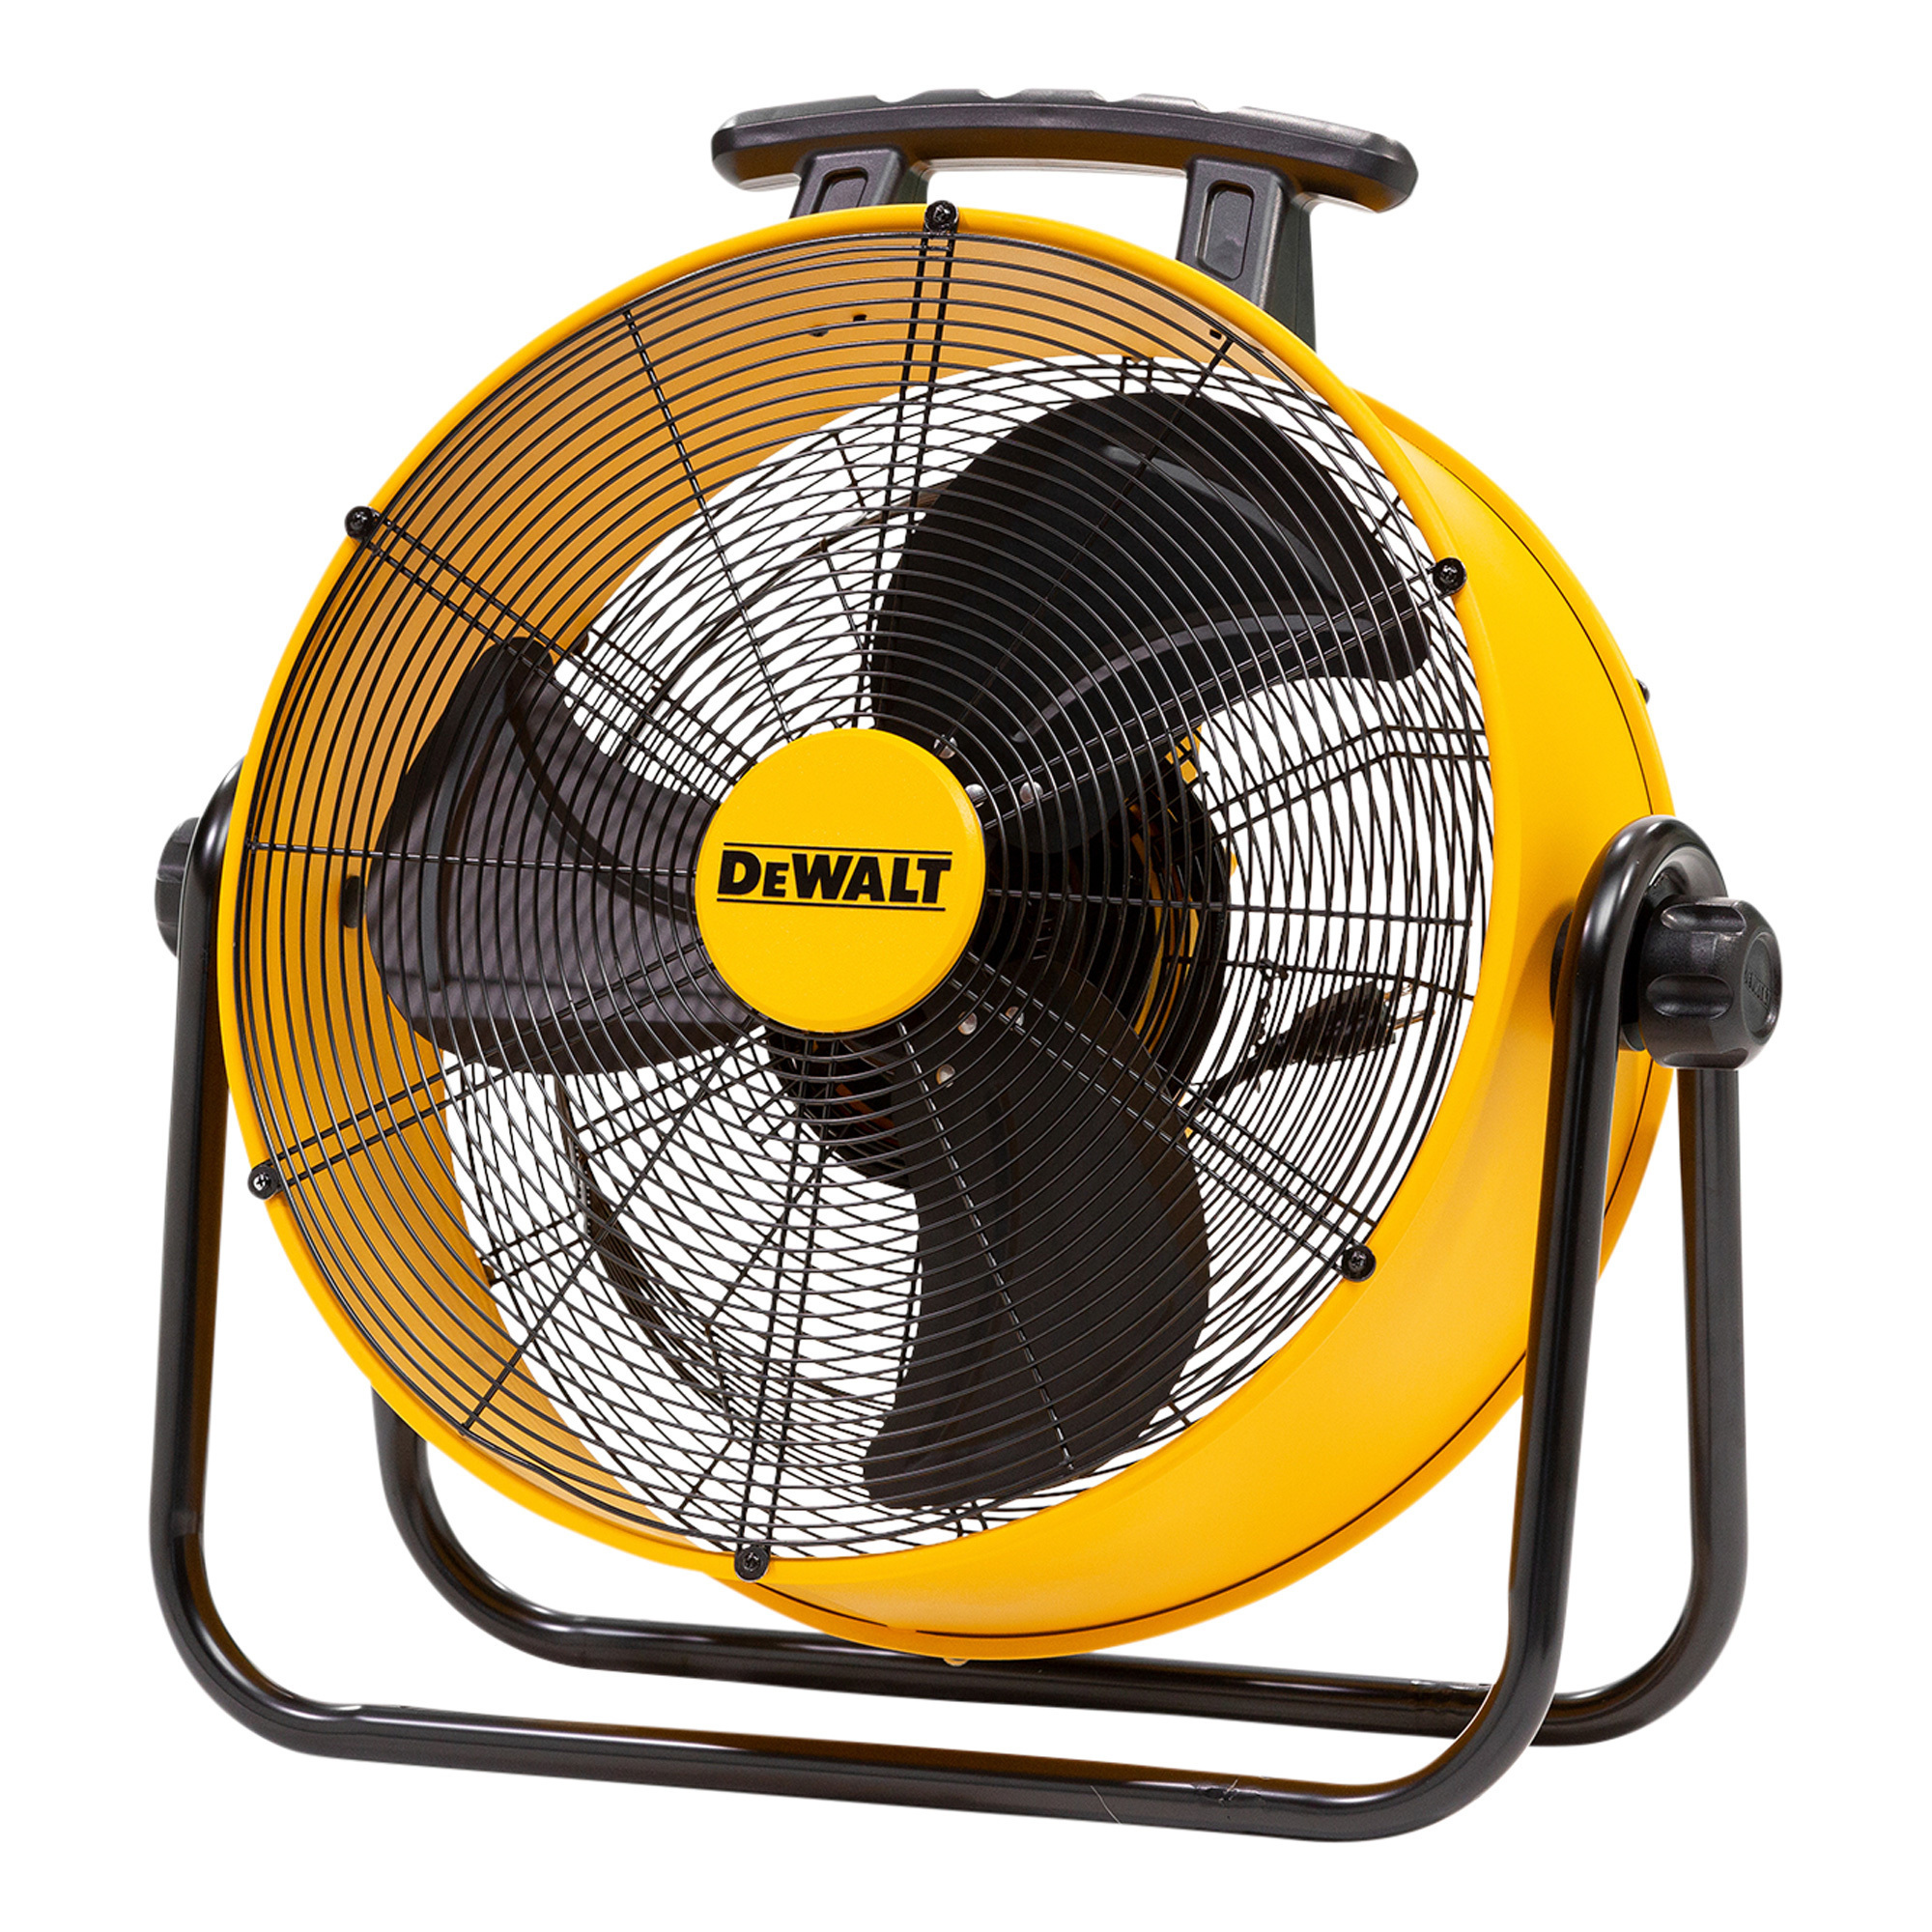 DeWALTS New Fan, Is it worth it? 